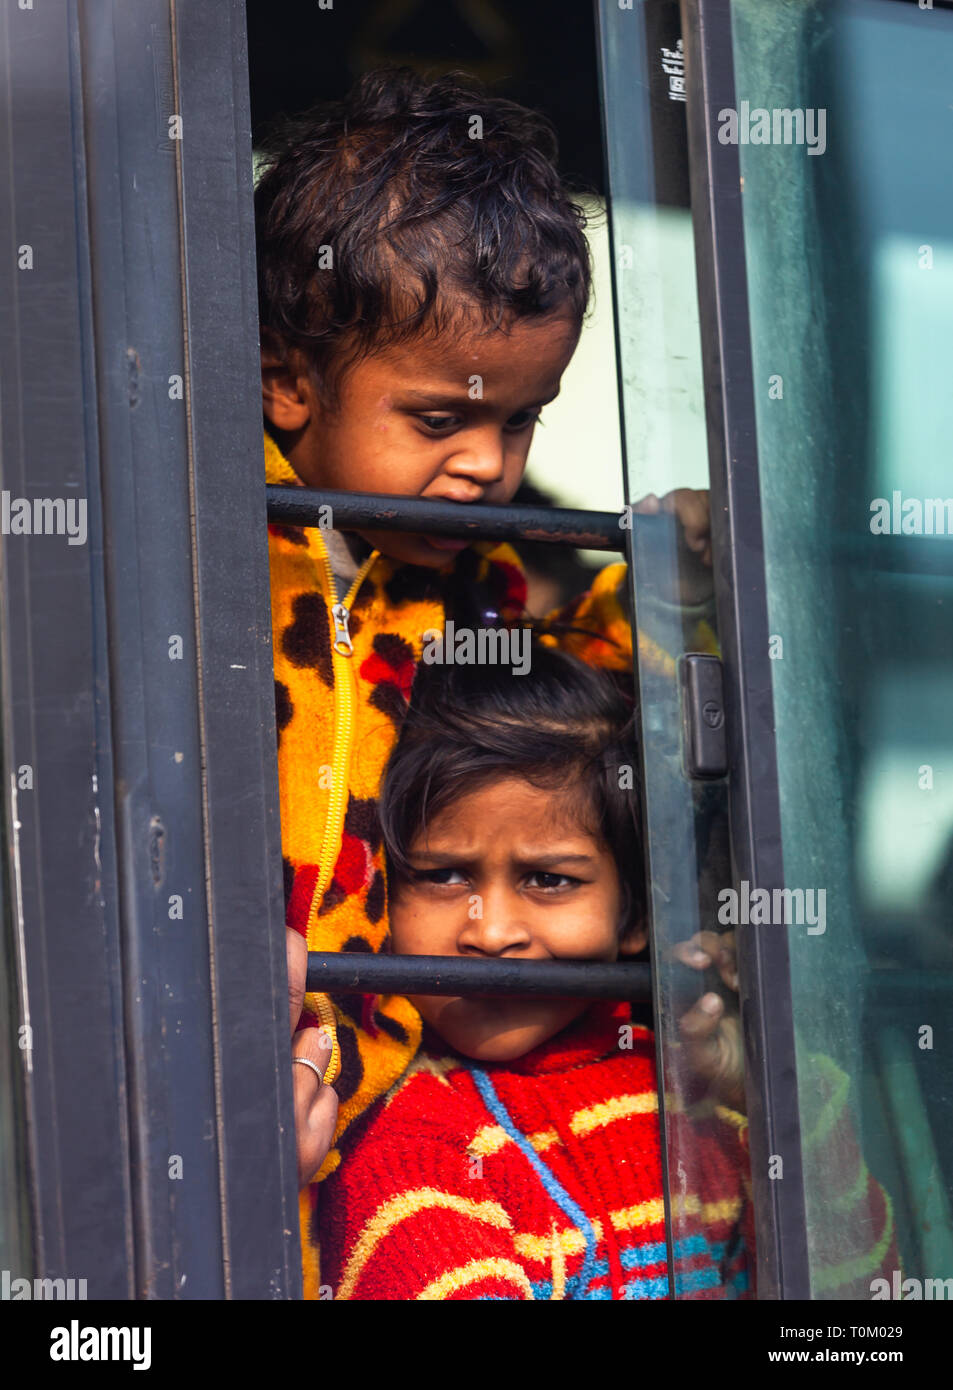 AGRA, INDIEN - November 15, 2012: Indische armen schmutzige Kinder die Fahrt mit dem Zug und schaut aus dem Fenster. Arme und reiche Inder leben Stockfoto